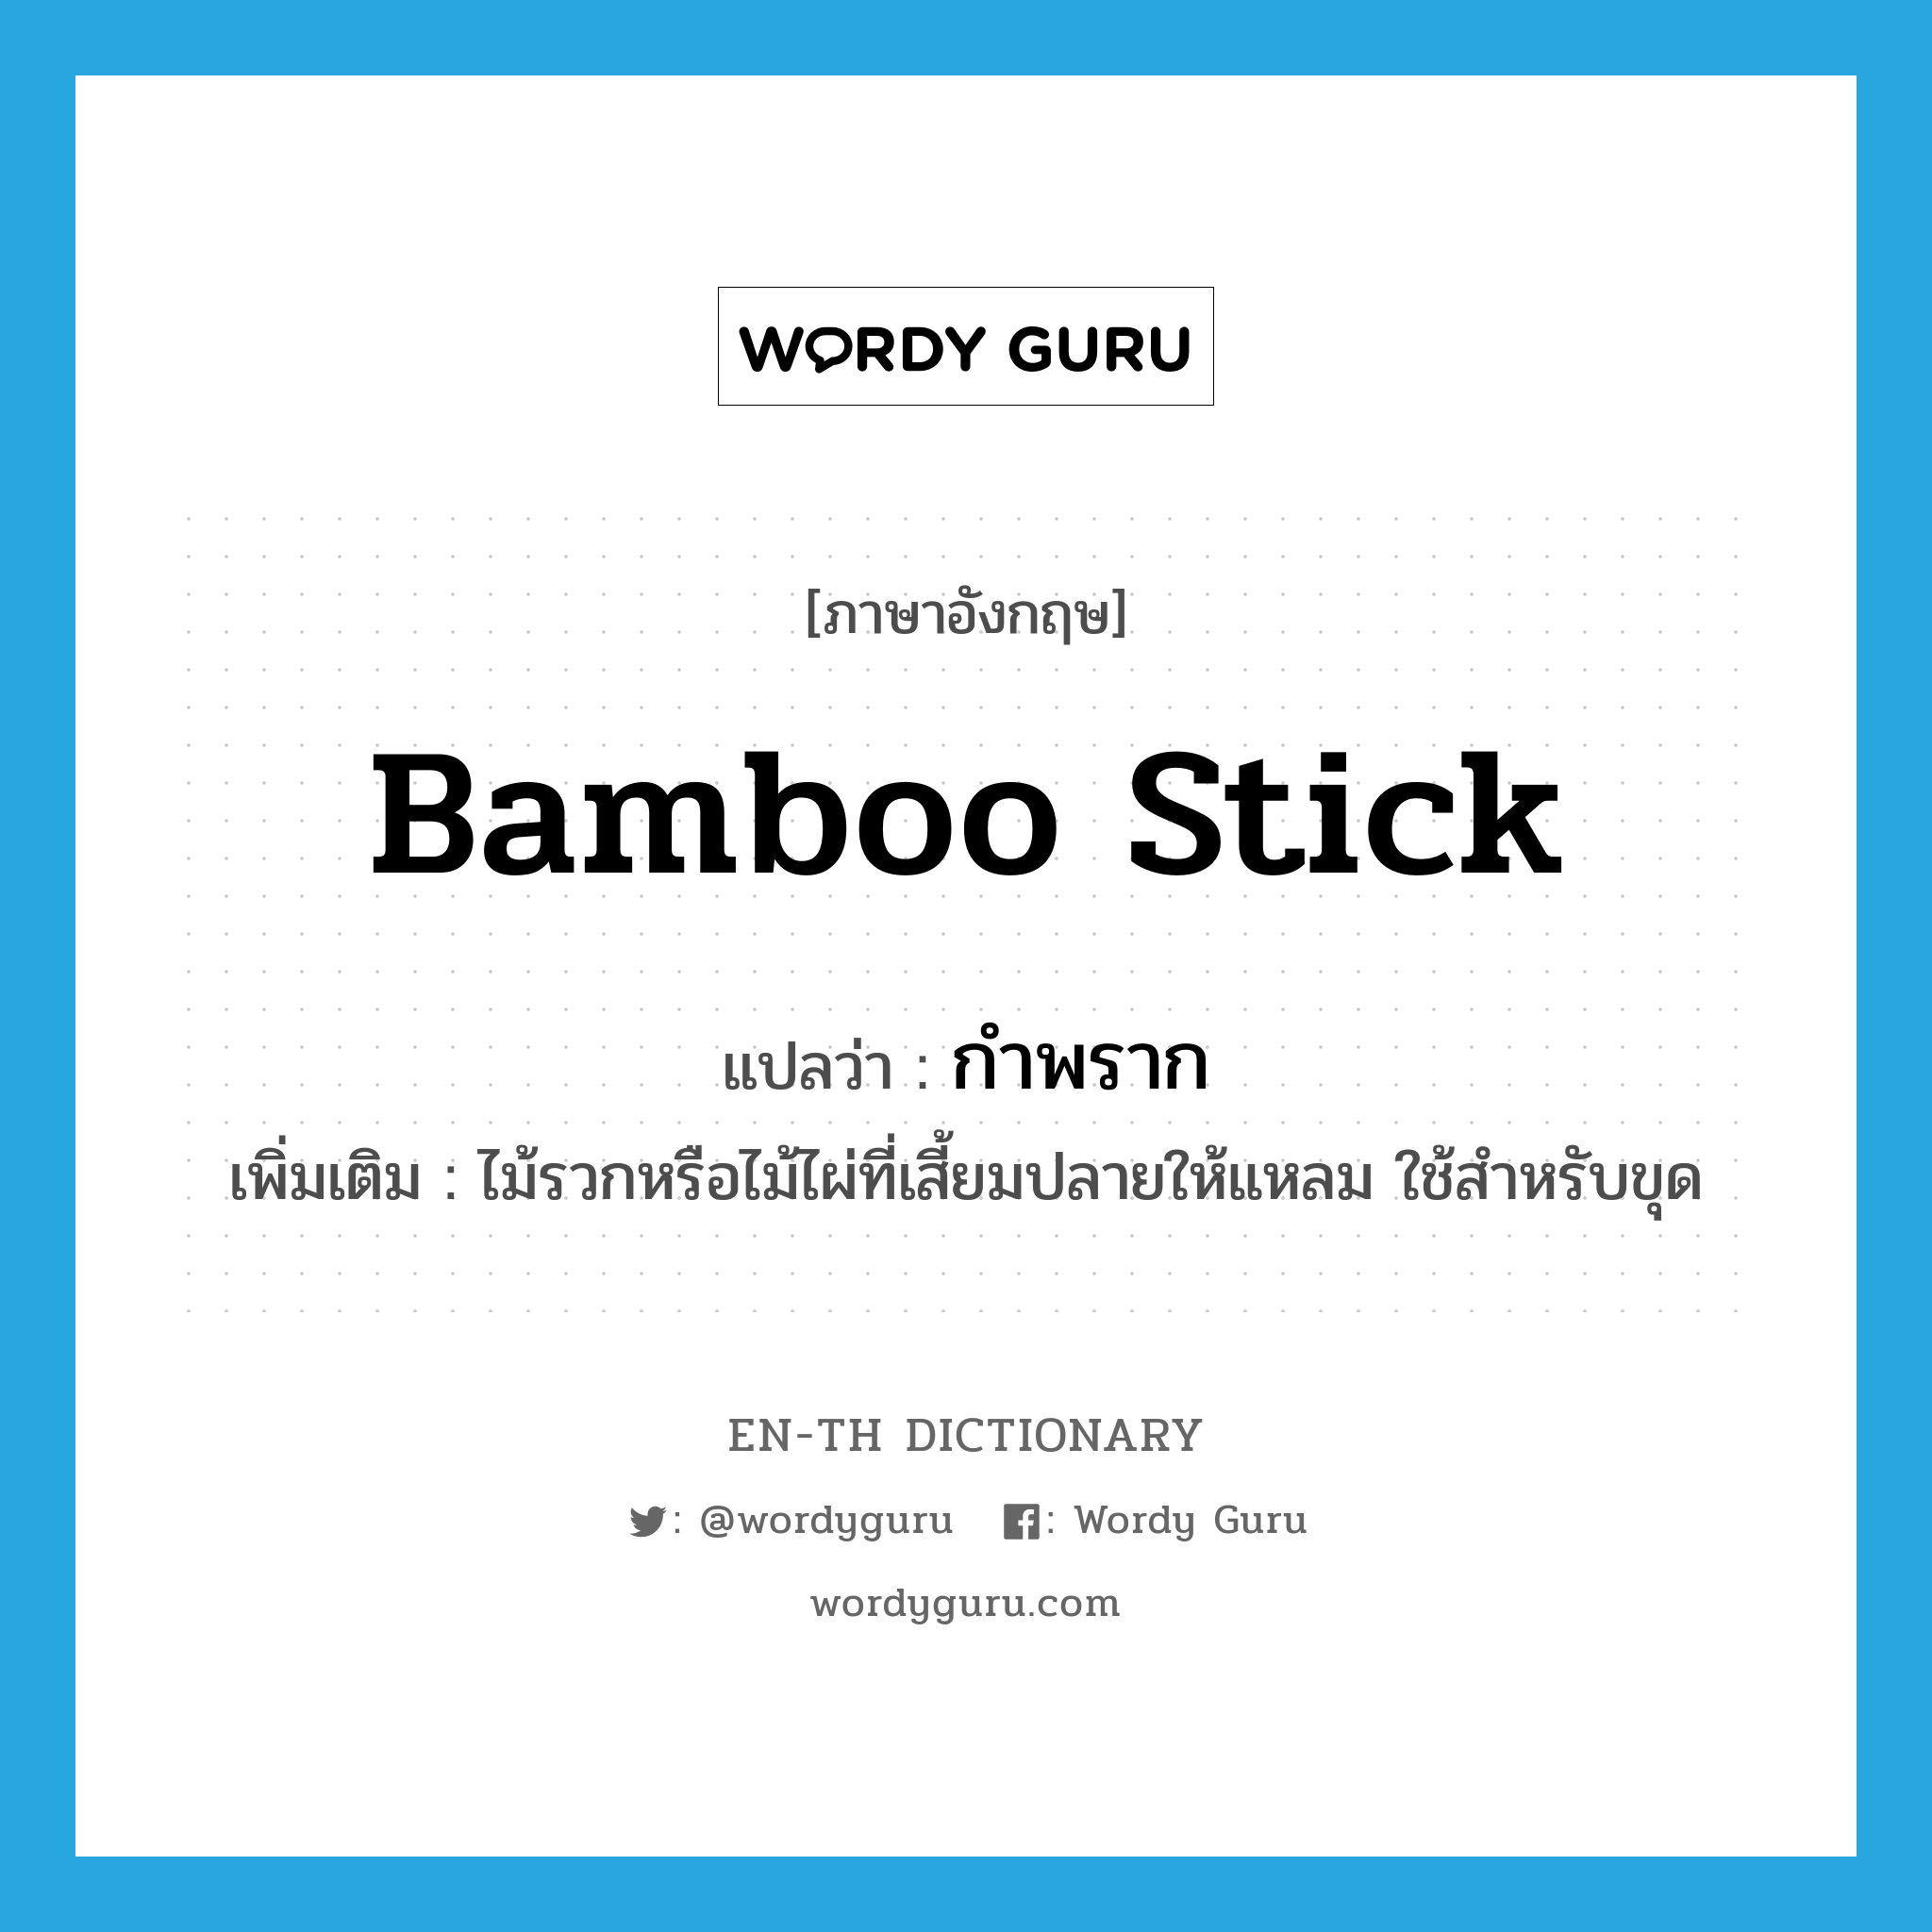 กำพราก ภาษาอังกฤษ?, คำศัพท์ภาษาอังกฤษ กำพราก แปลว่า bamboo stick ประเภท N เพิ่มเติม ไม้รวกหรือไม้ไผ่ที่เสี้ยมปลายให้แหลม ใช้สำหรับขุด หมวด N